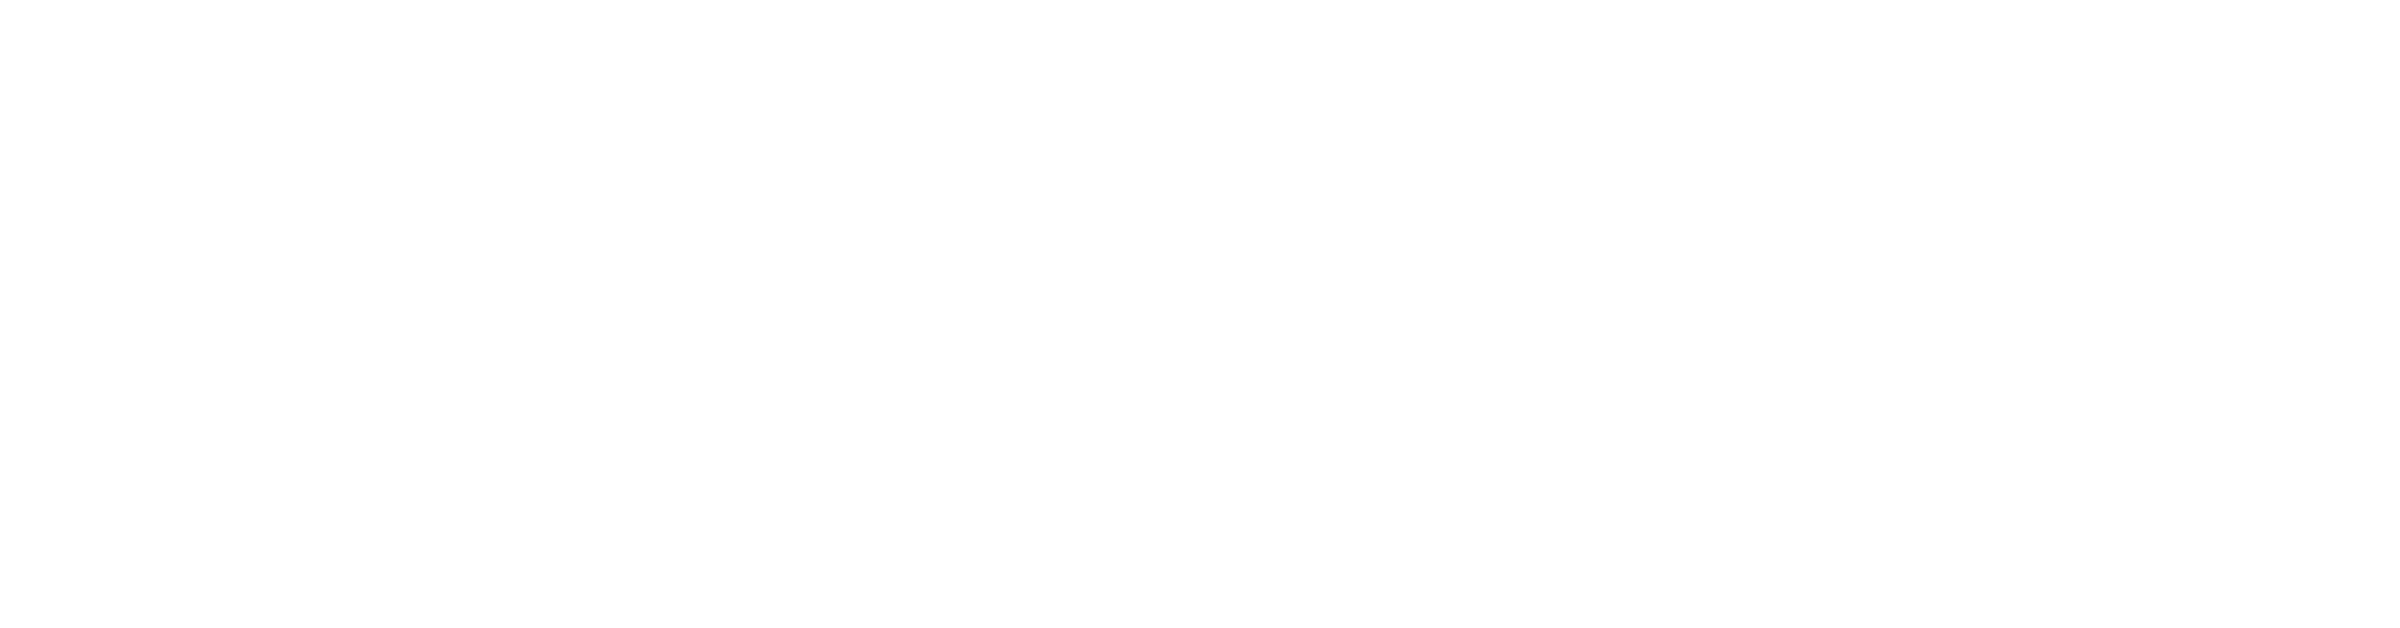 forbes-logo-transparent